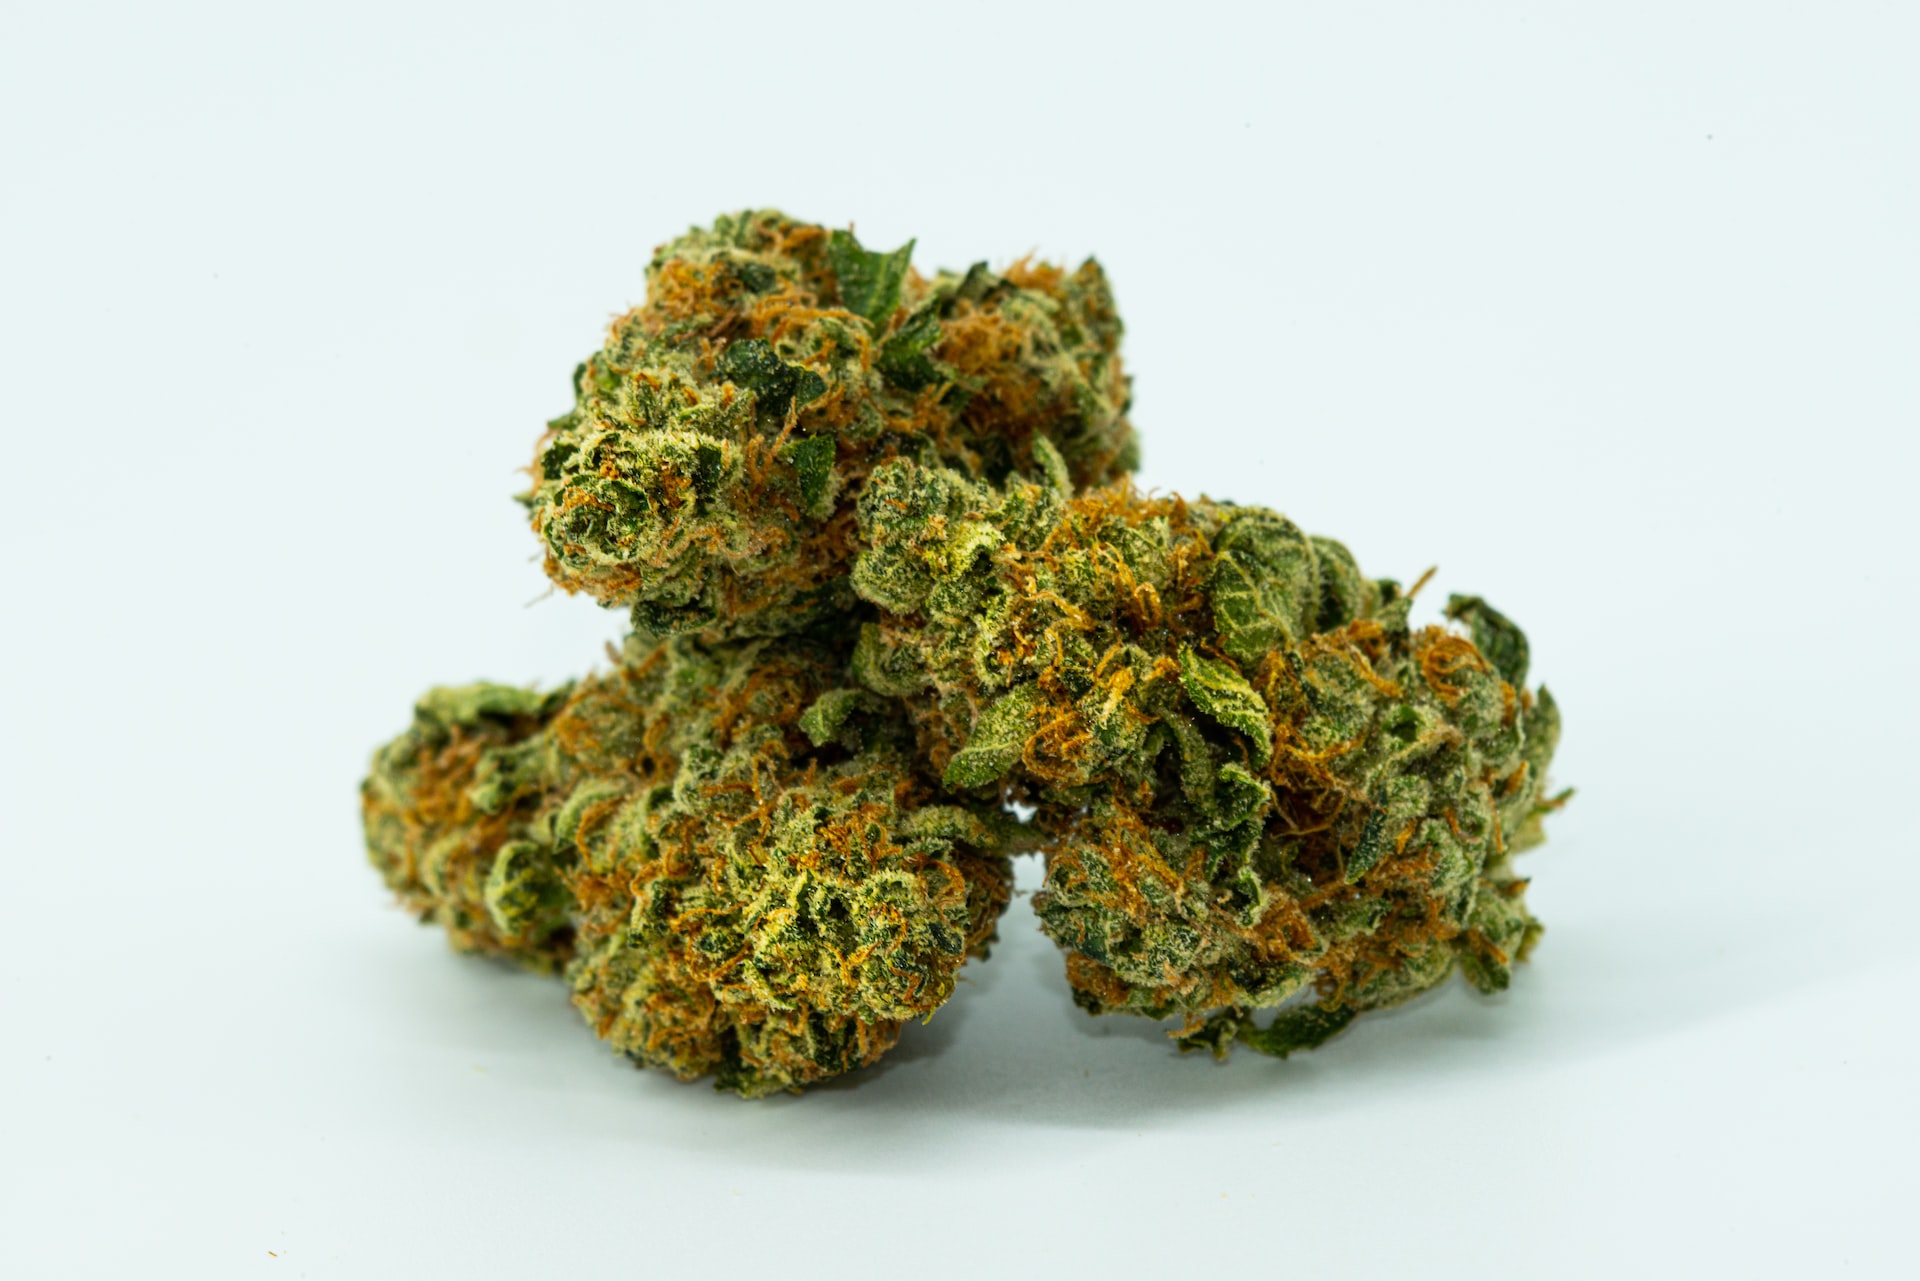 dried cannabis flower nugs